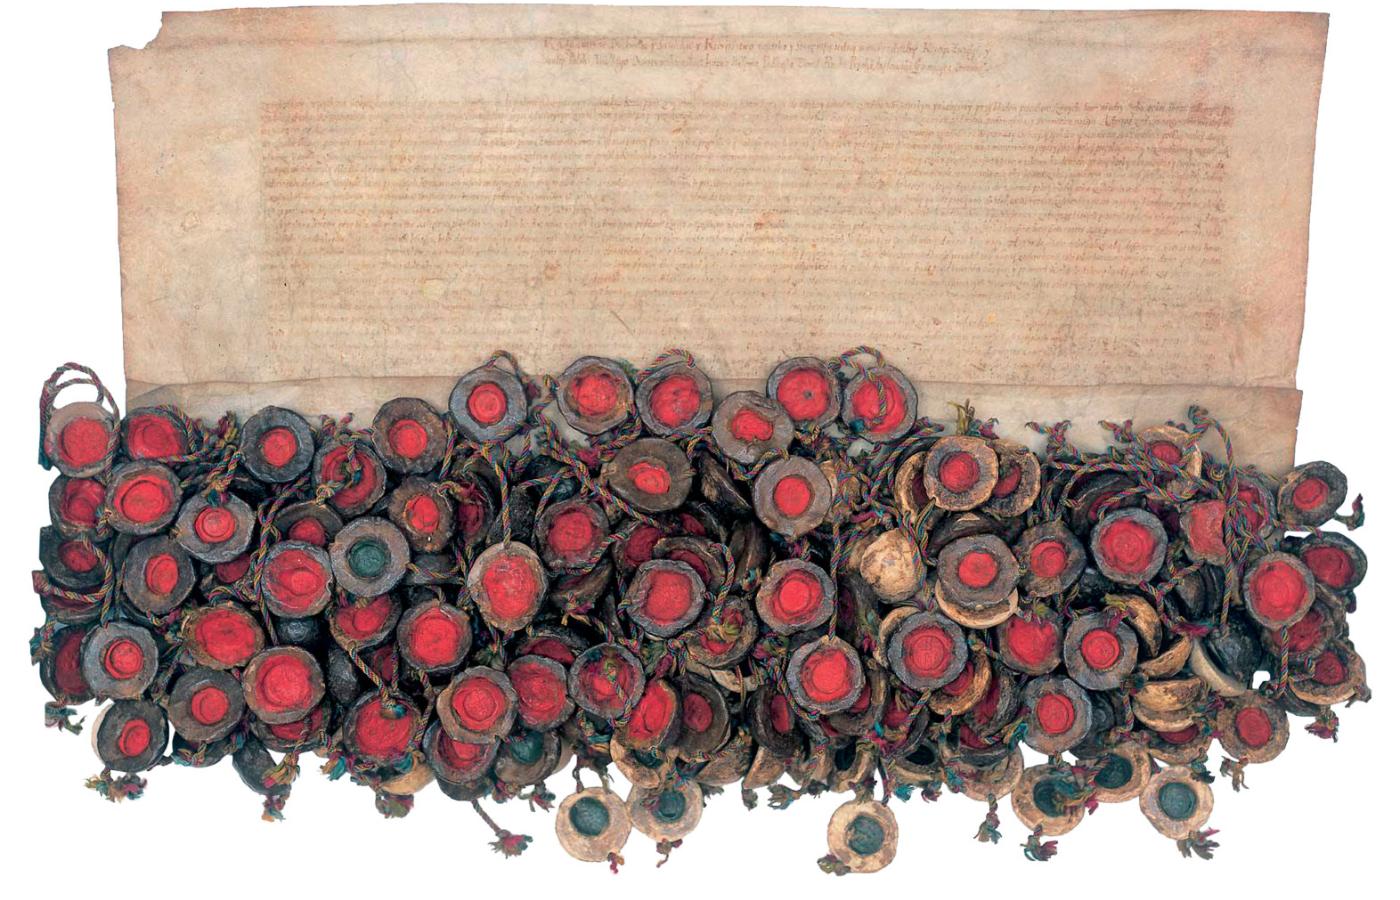 Akt konfederacji warszawskiej z 1573 r., ustanawiający tolerancję religijną jako zasadę ustrojową.